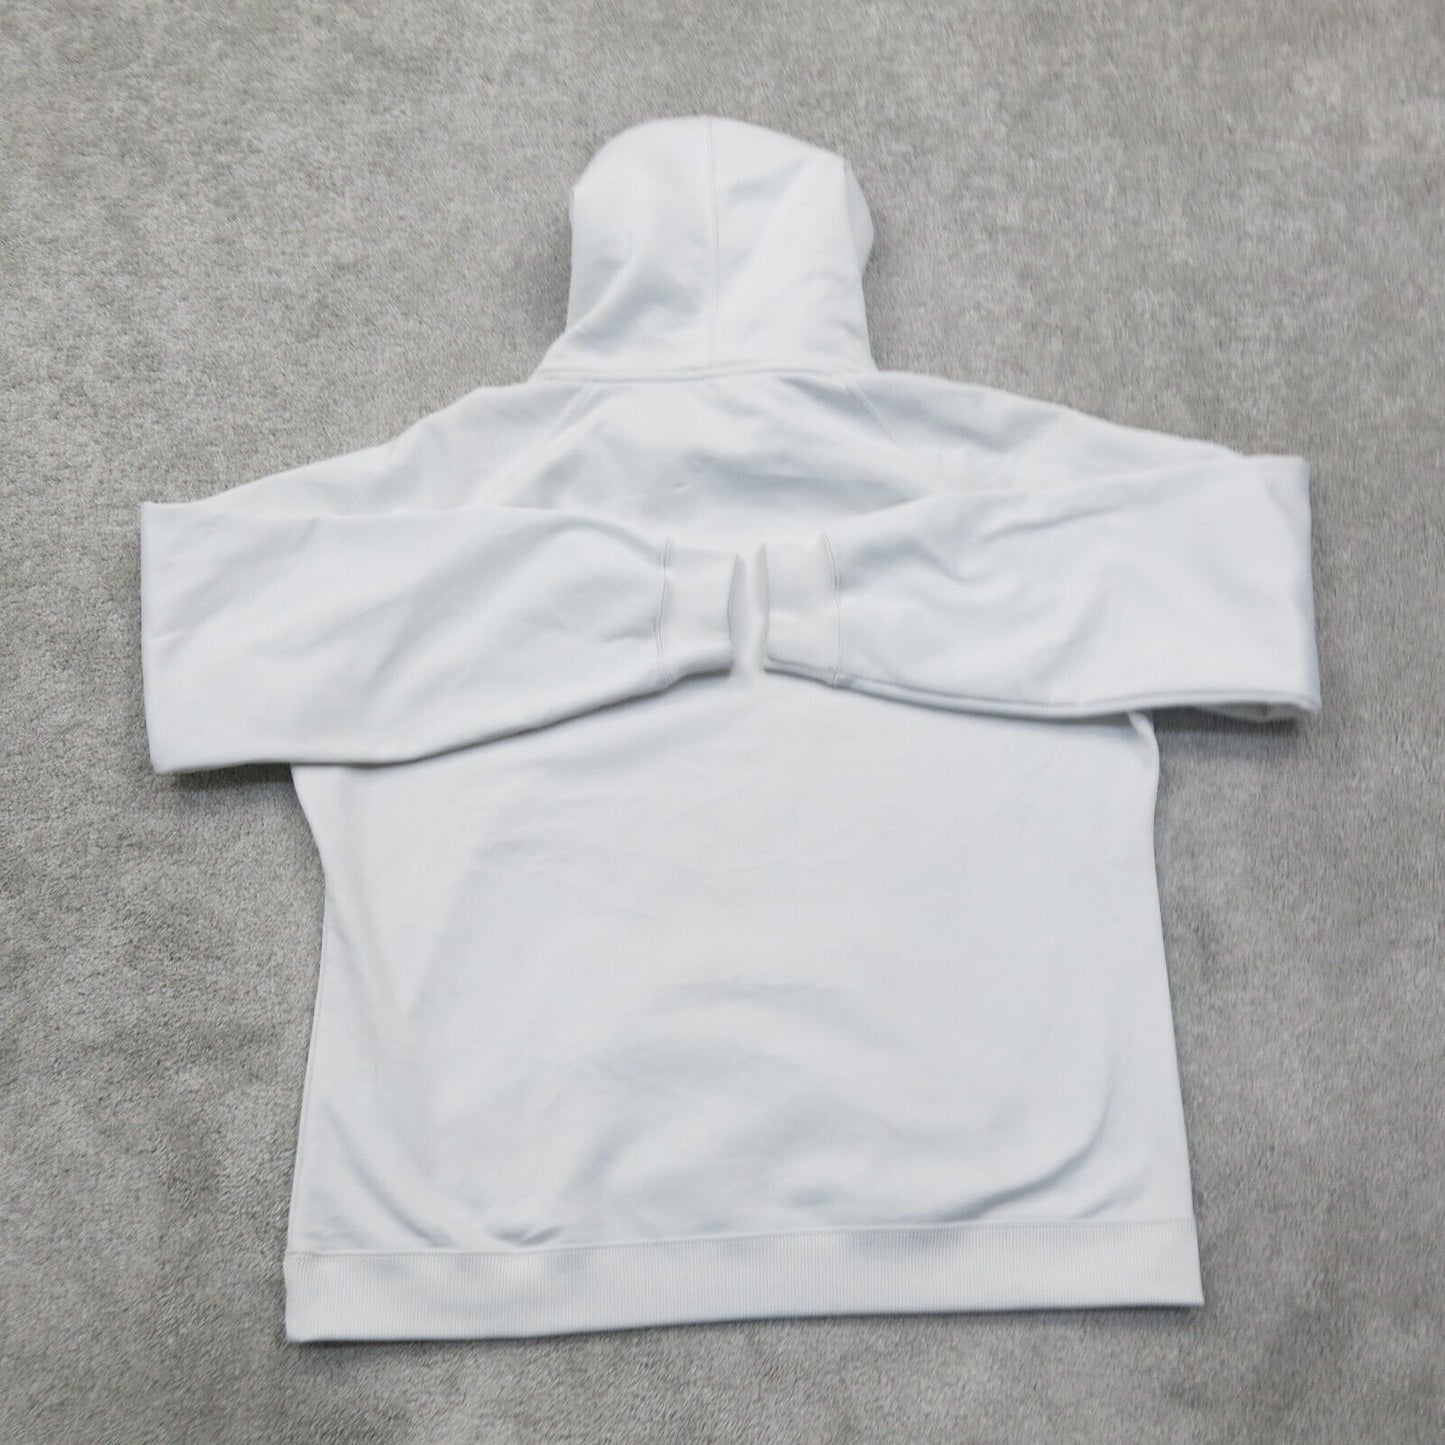 Under Armour Mens Hoodie Sweatshirt Drawstring Kangaroo Pockets White Size Large